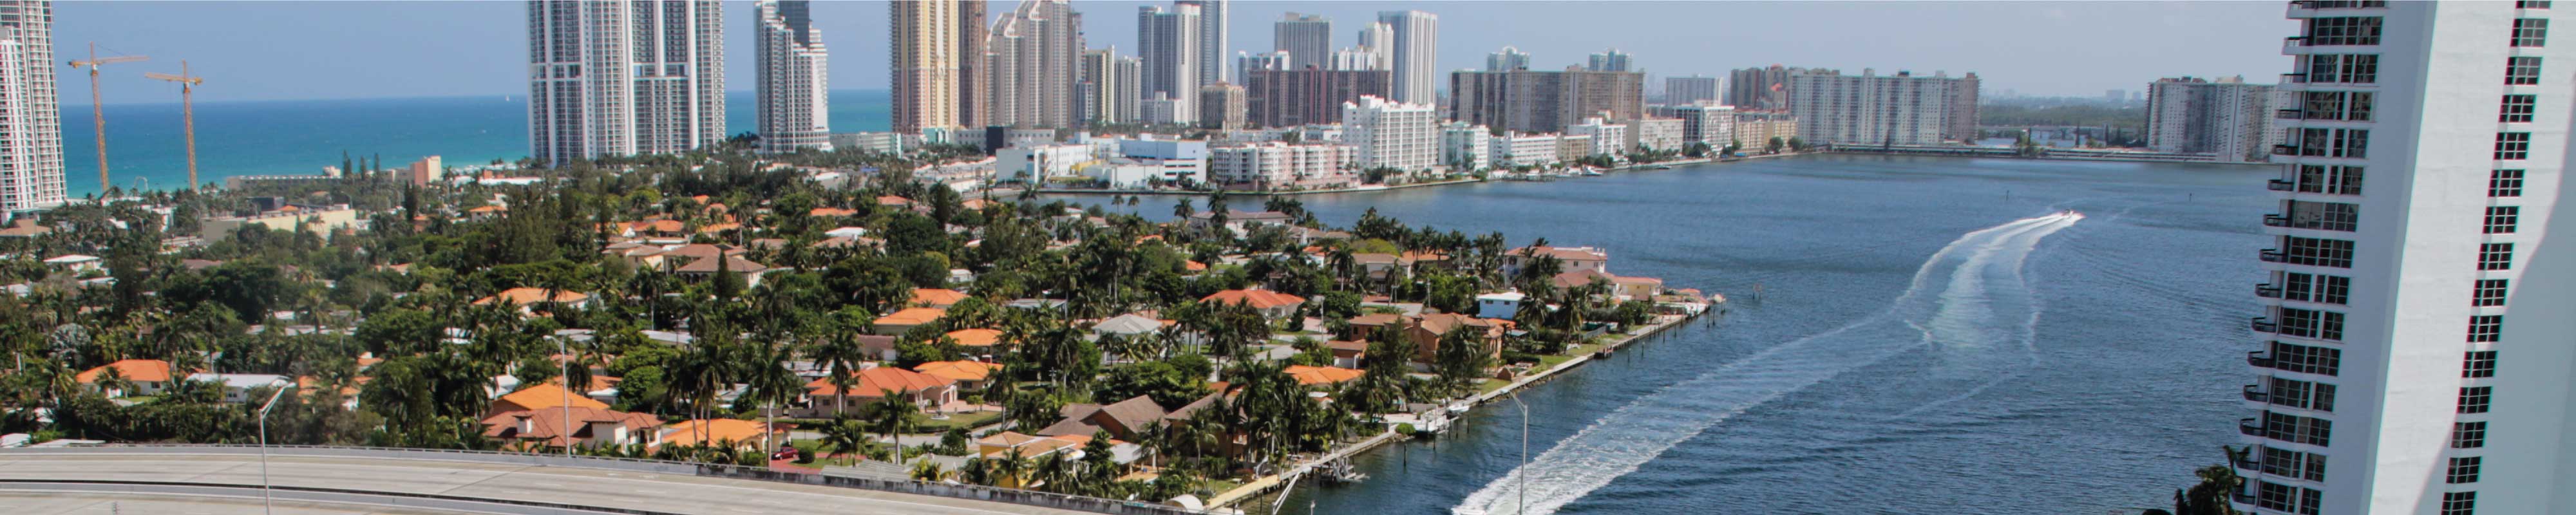 Consigna Equipaje | Miami Beach en Miami - Nannybag